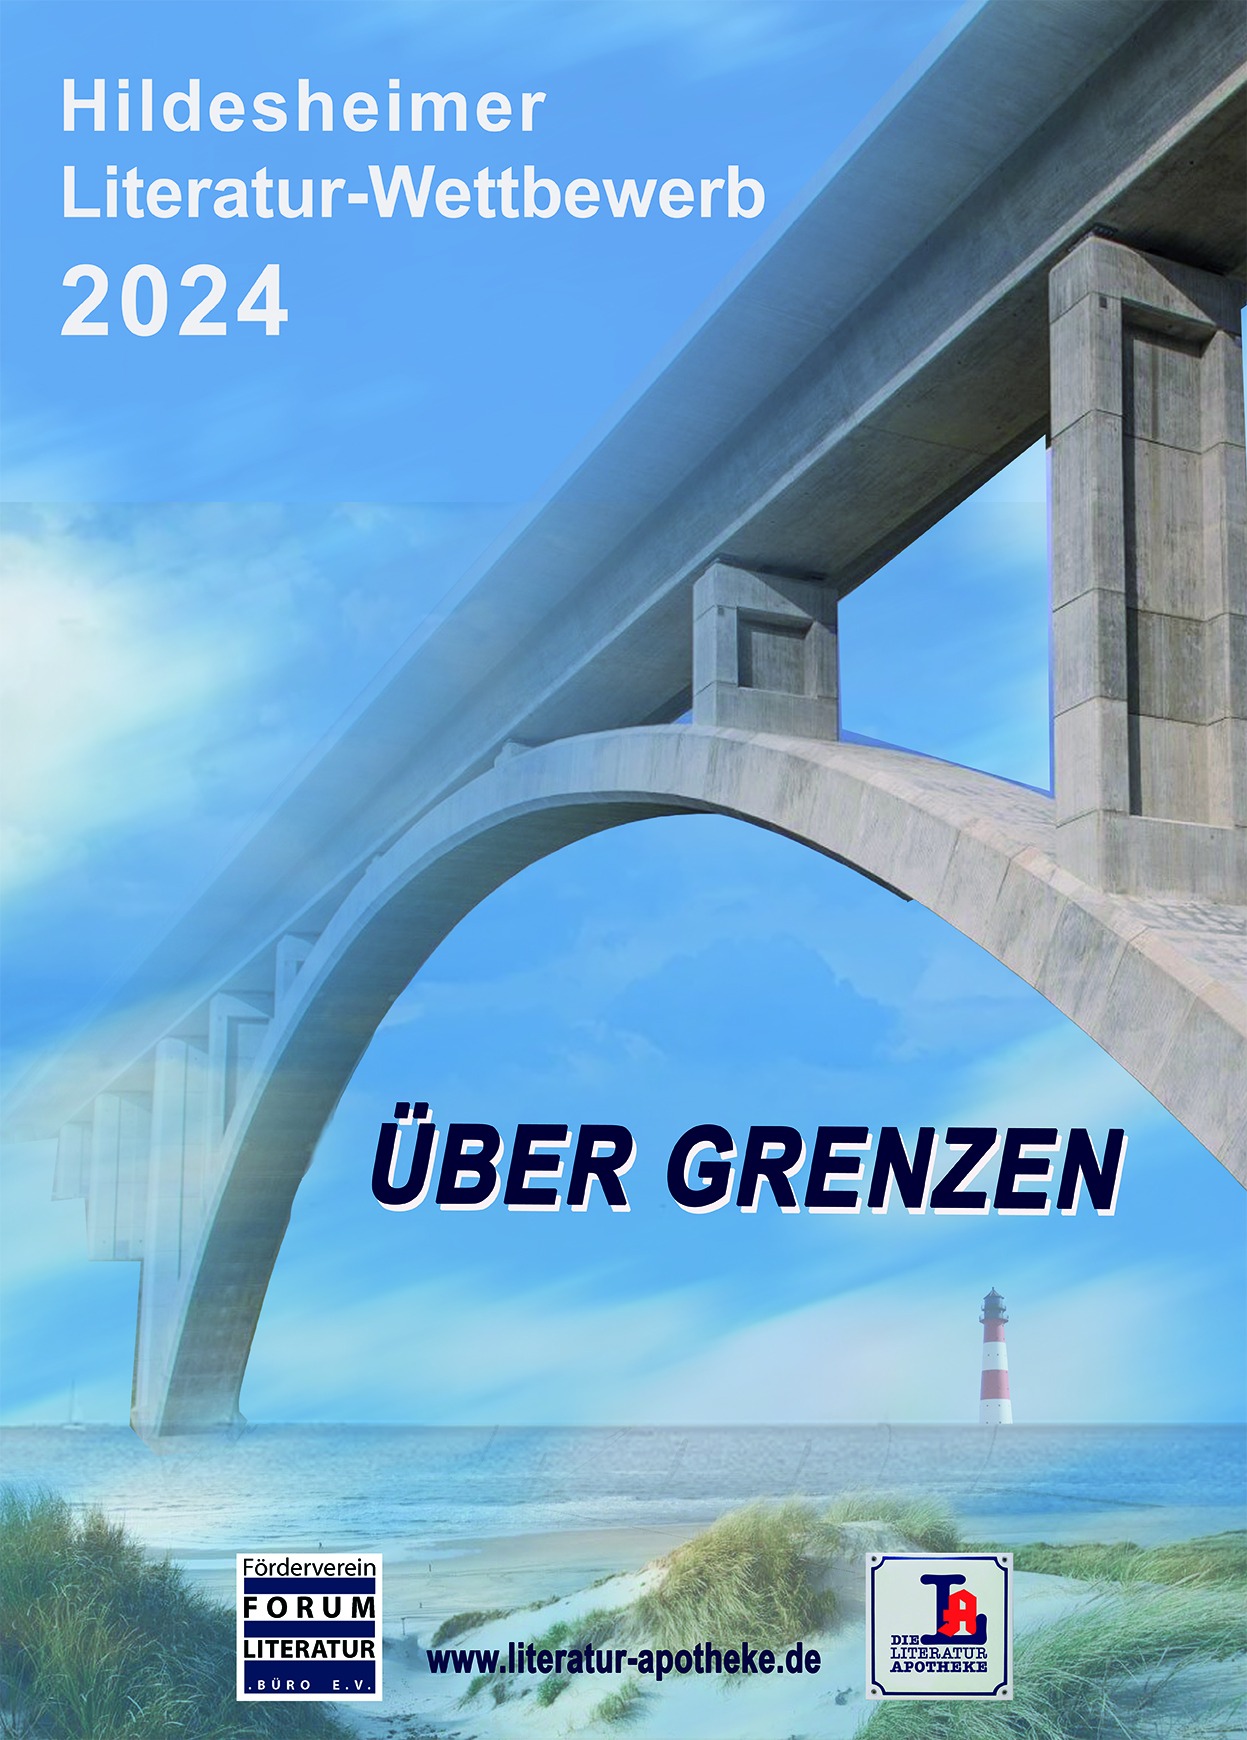 Auf dem Plakat des Hildesheimer Literaturwettbewerbs 2024 "Über Grenzen" führt eine große Steinbrücke über das Meer